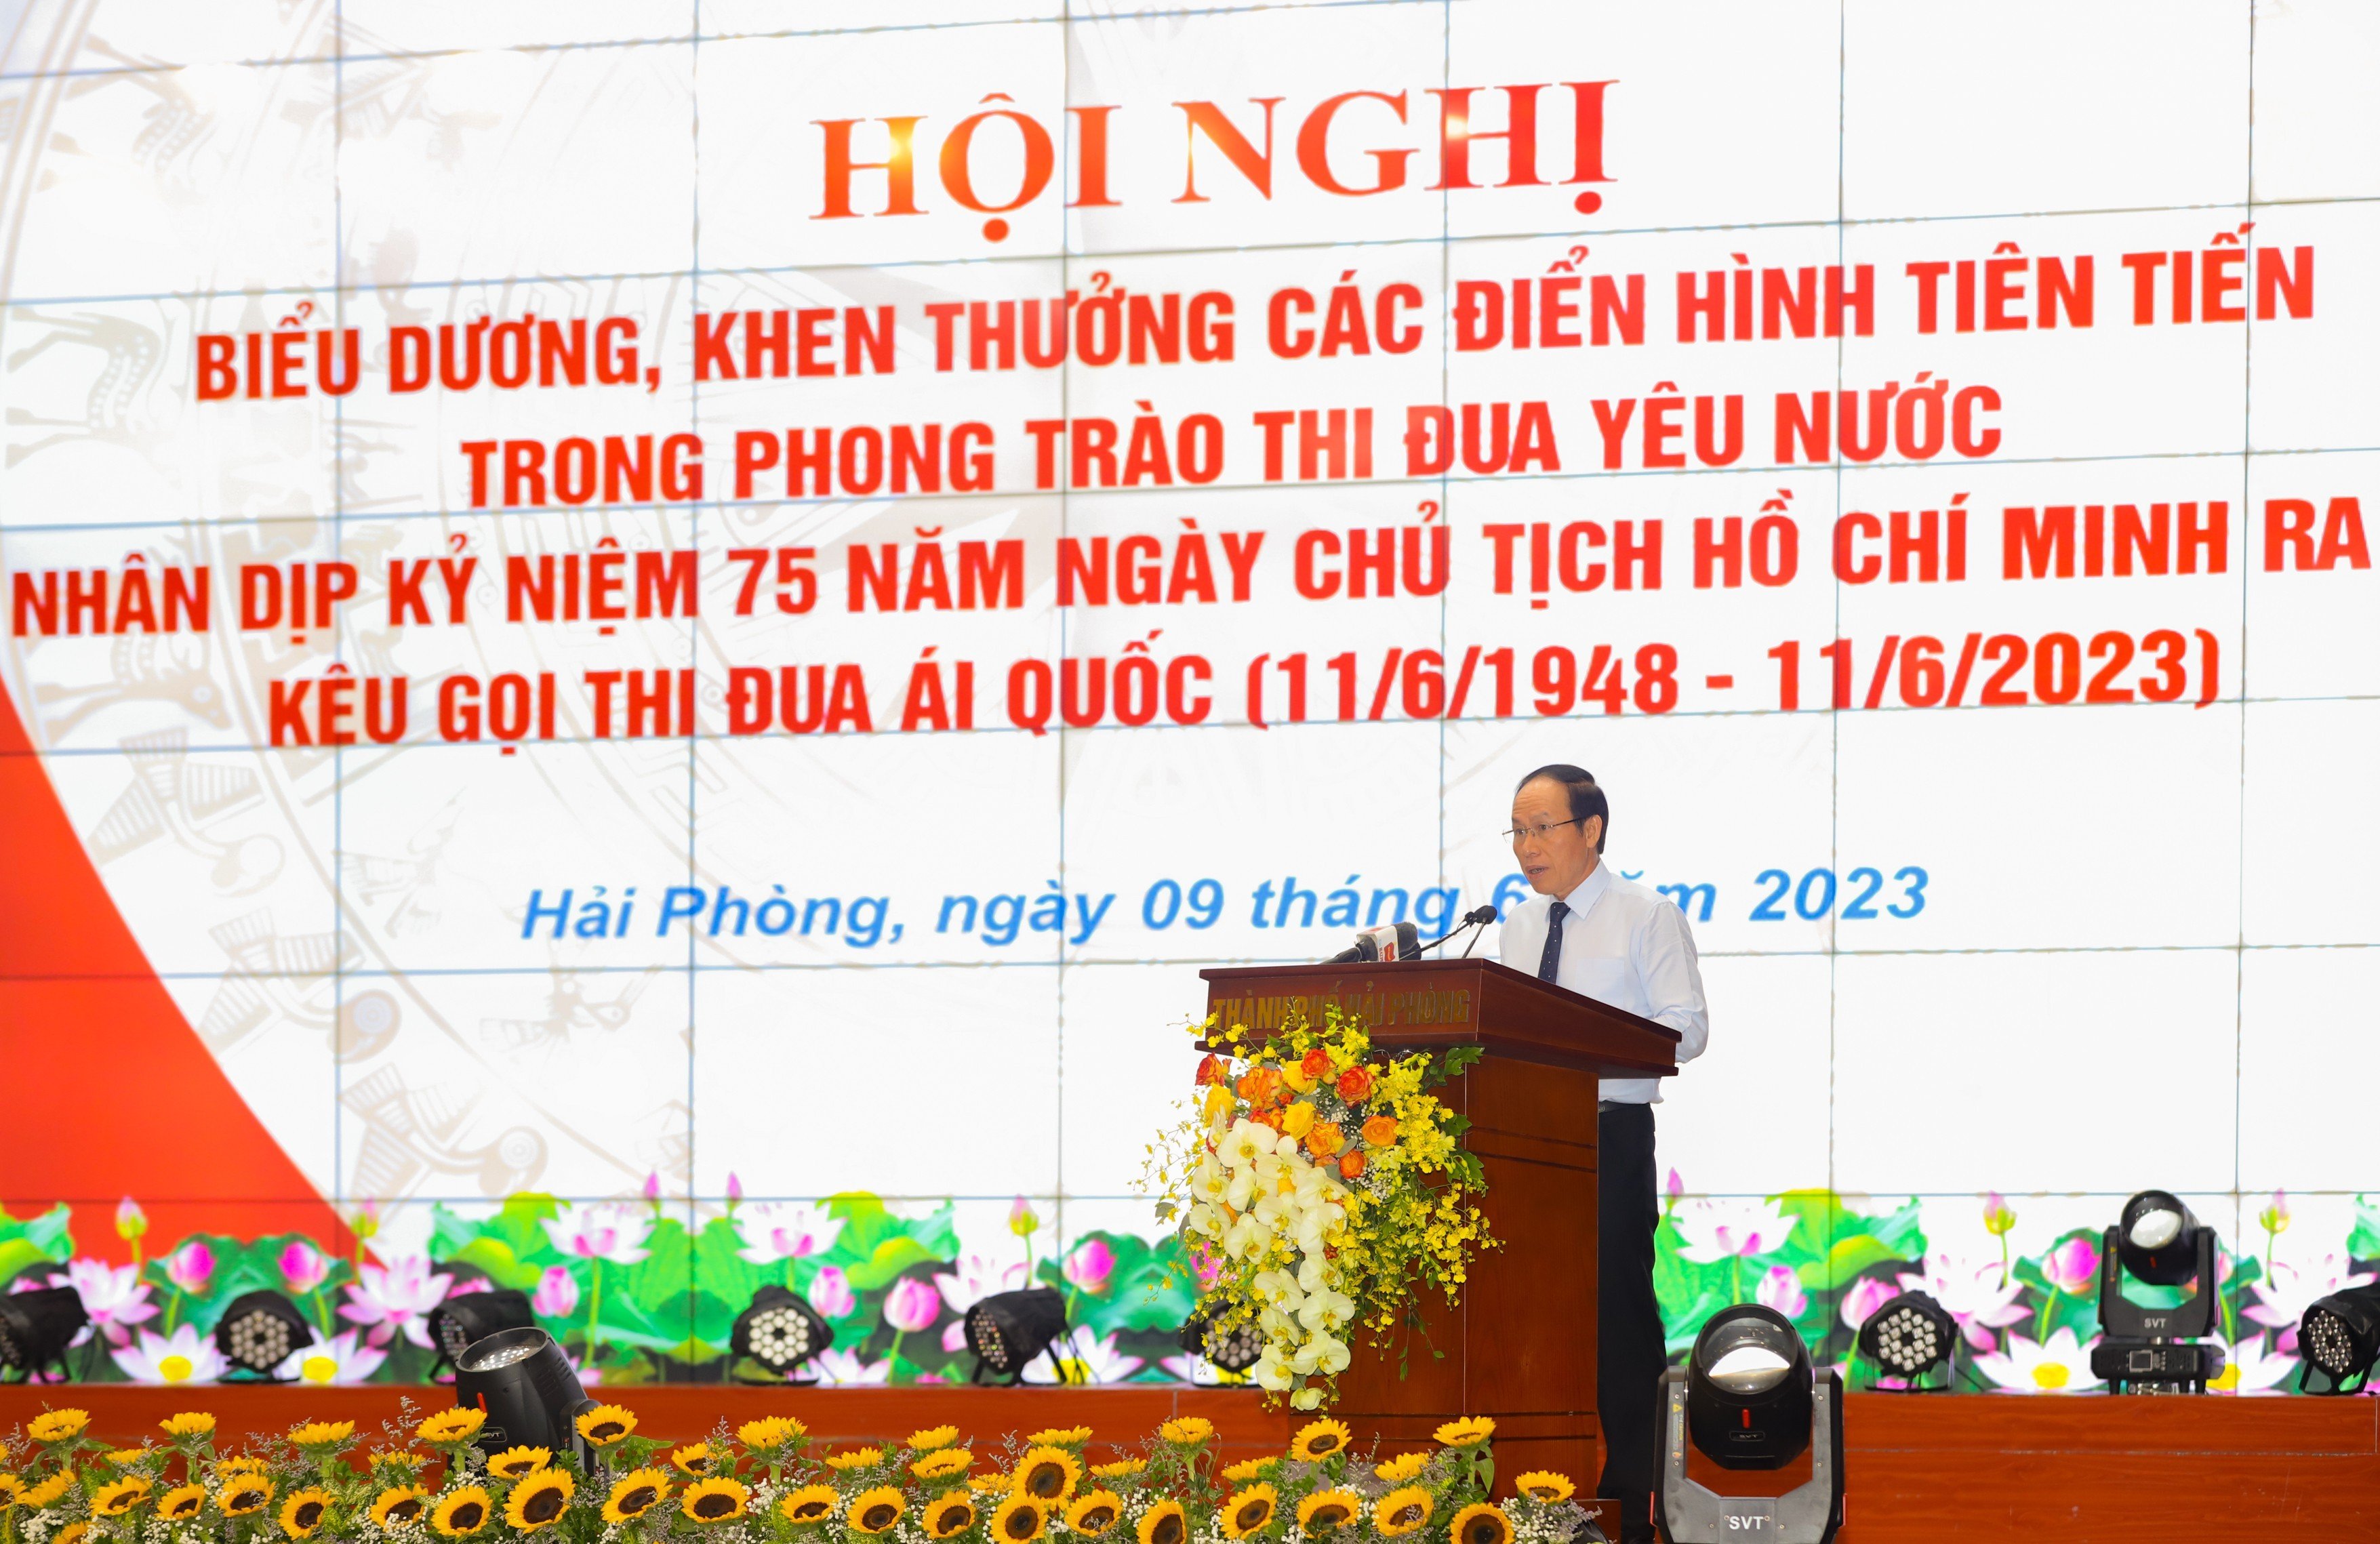 Ông Lê Tiến Châu, Bí thư Thành ủy Hải Phòng phát biểu khai mạc Hội nghị